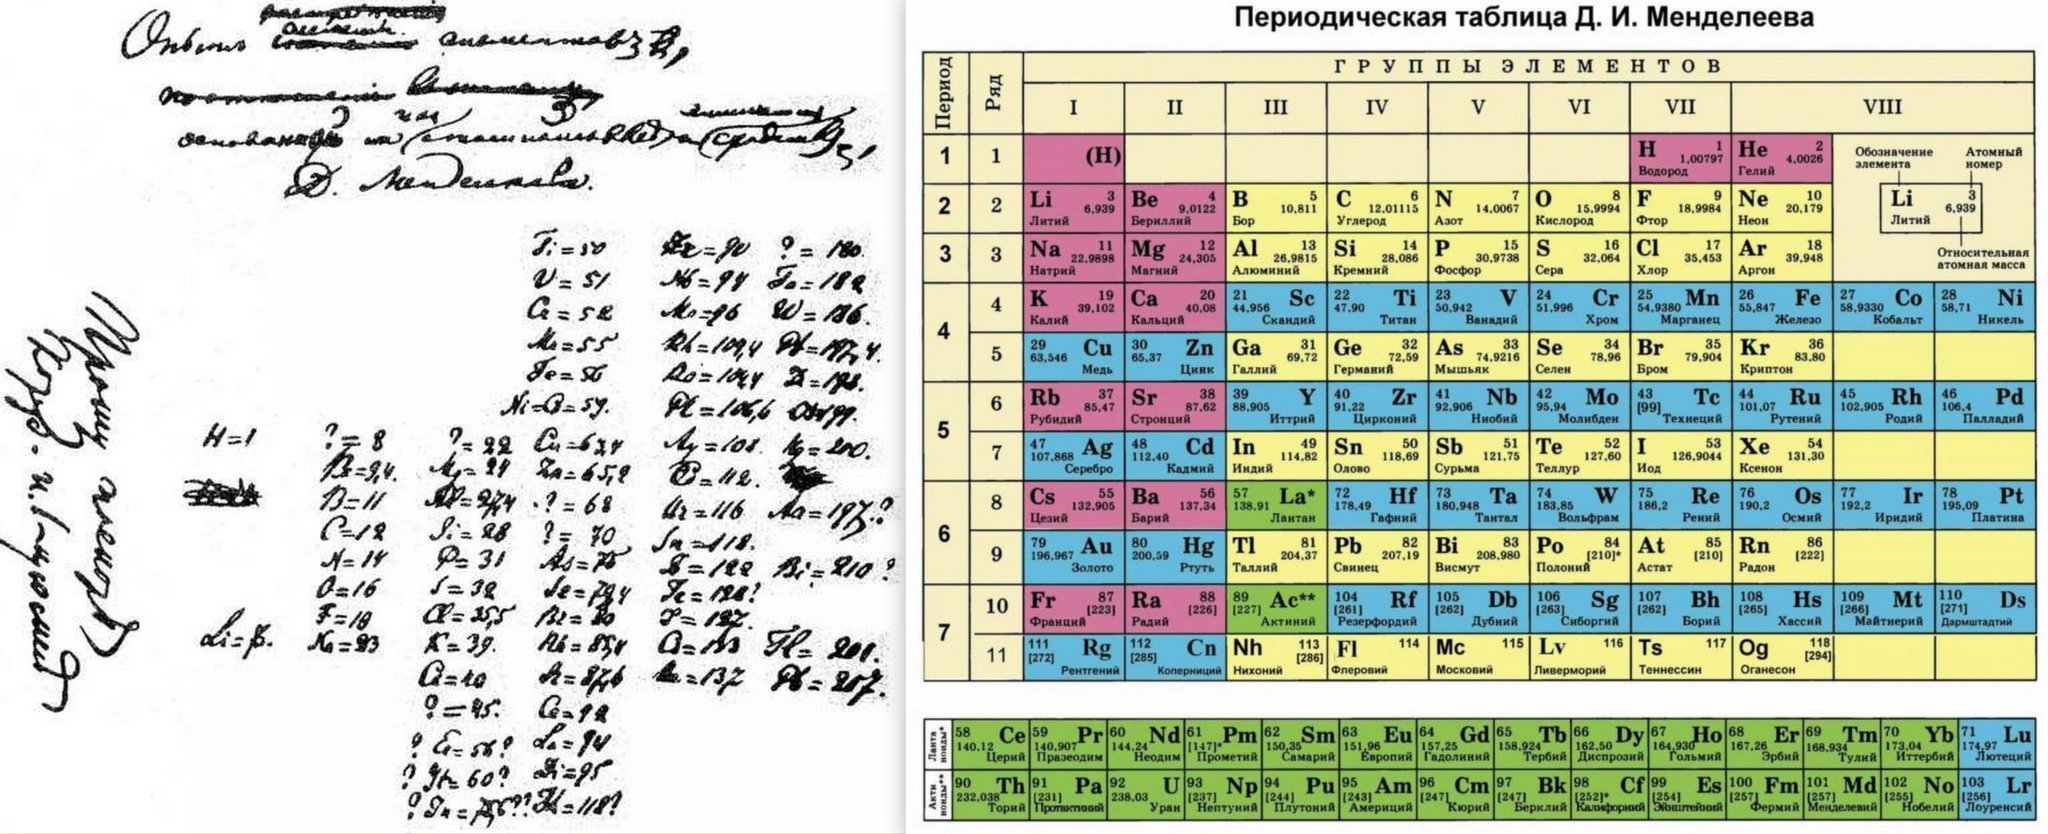 Сейчас открывают элементы. Периодическая система Менделеева 1869. Периодическая таблица Менделеева 1869. Первая таблица Менделеева 1869.